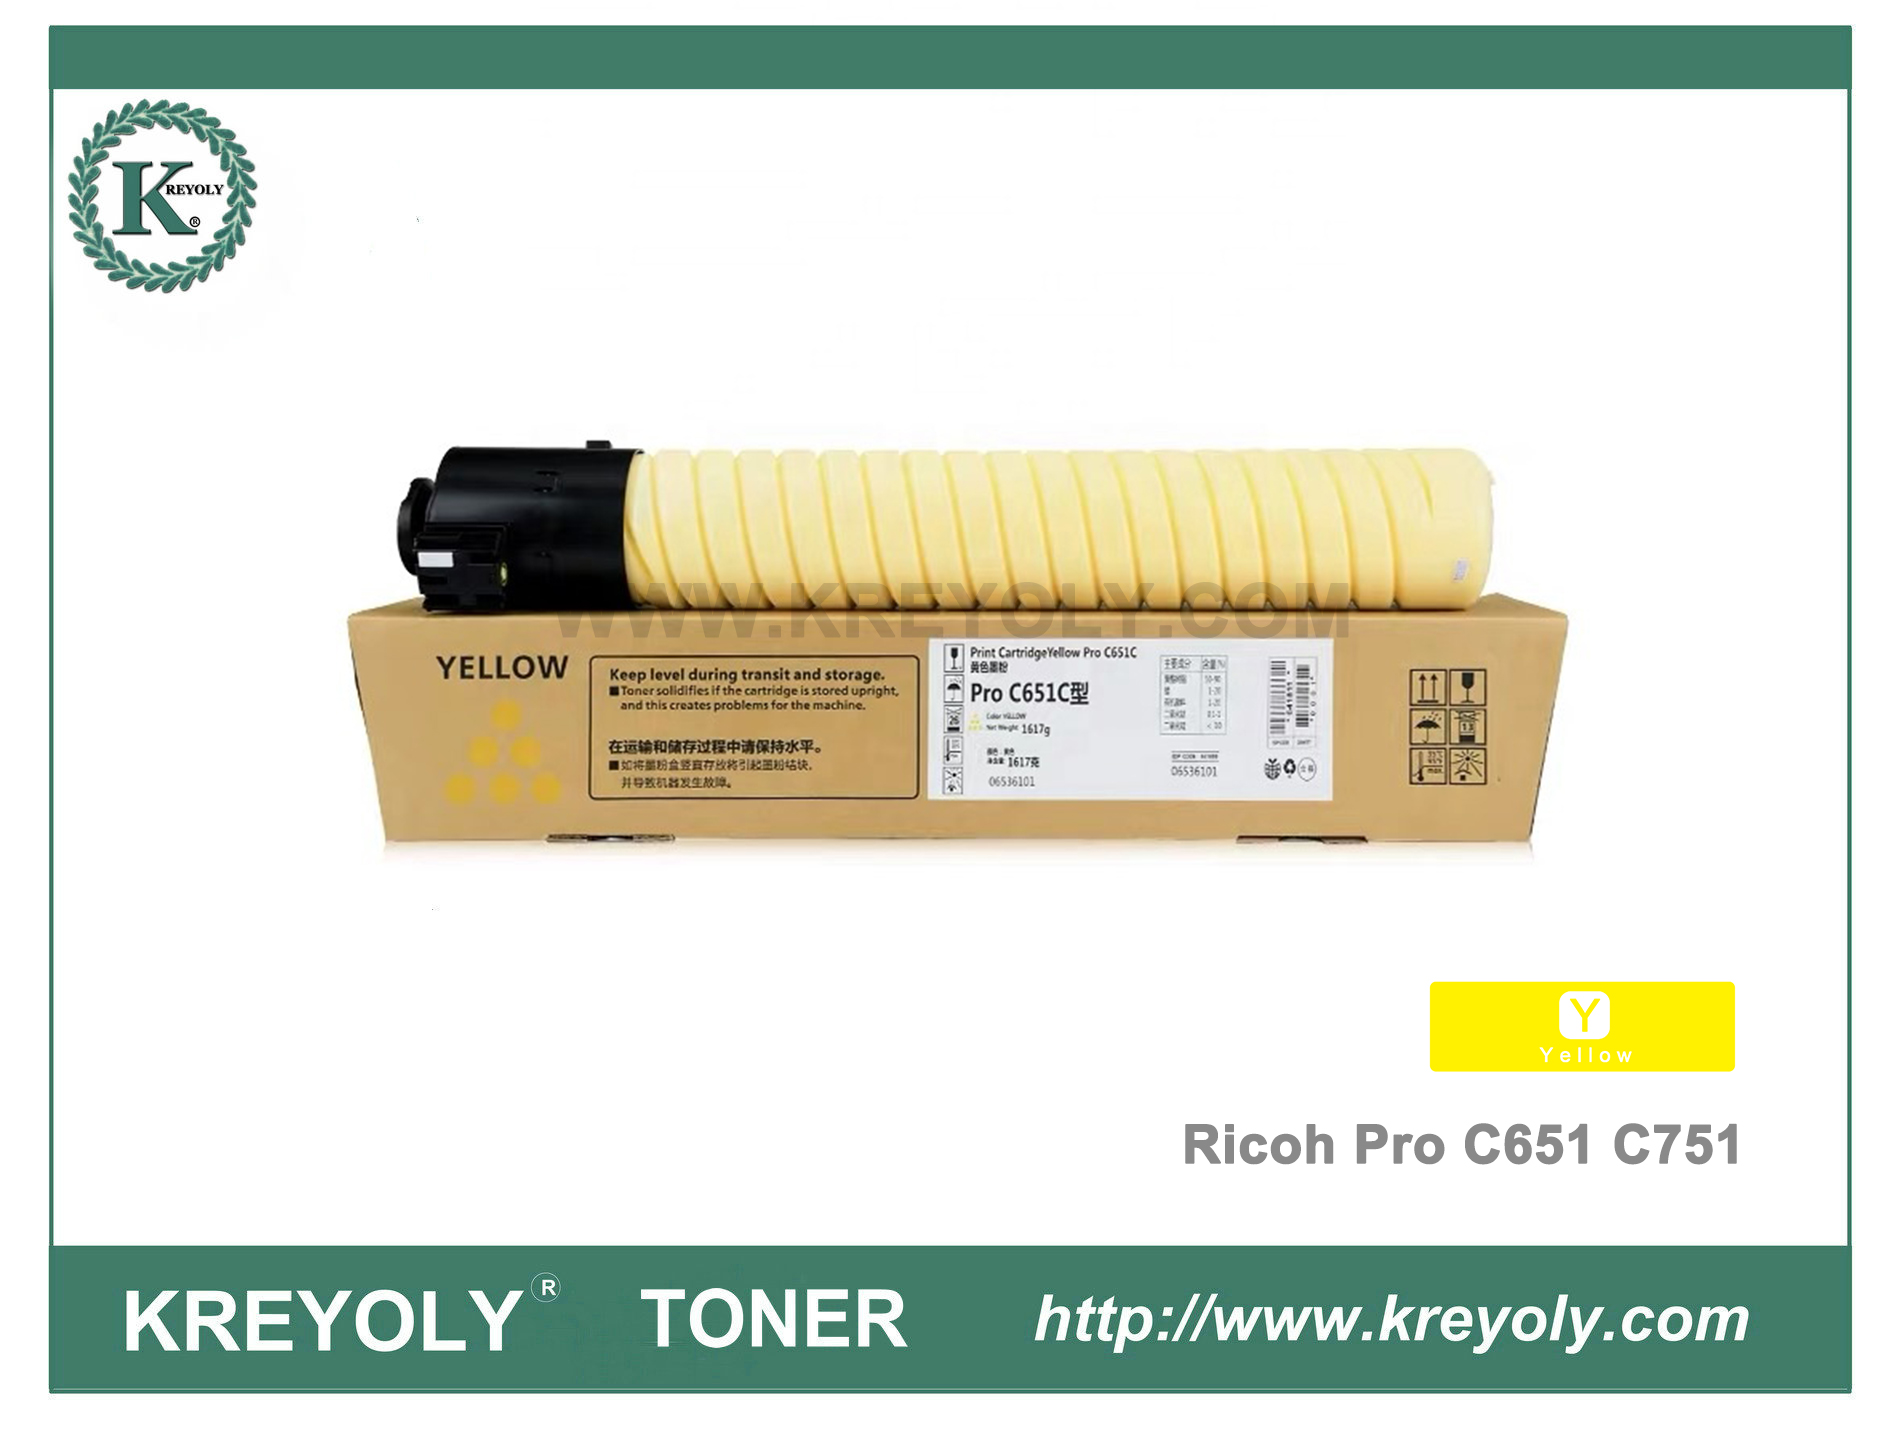 Cartucho de tóner Ricoh Color para Pro C651 C751